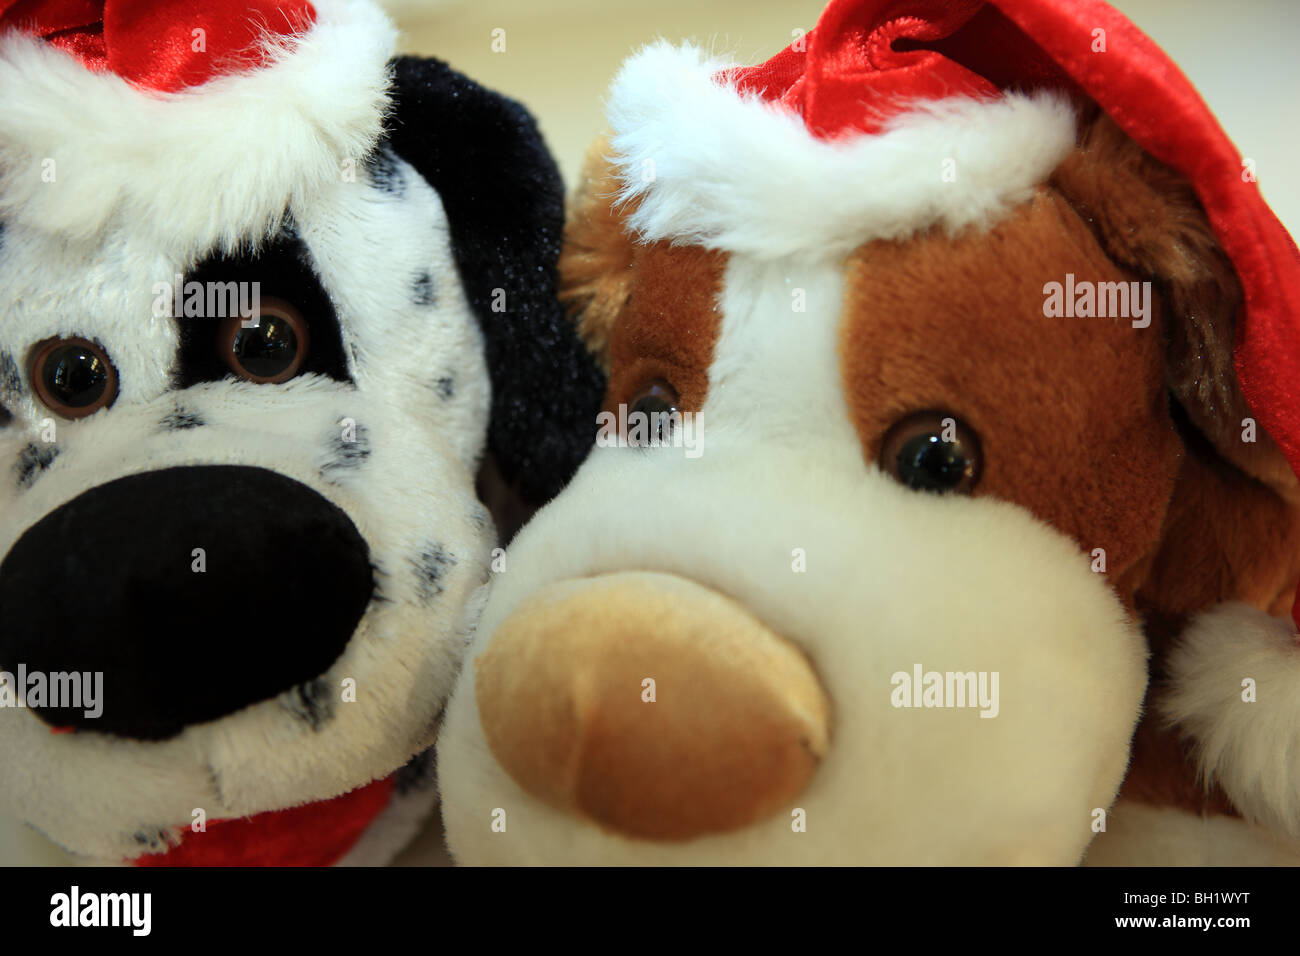 Juguetes peludos vestidos de rojo sombreros de Navidad Foto de stock